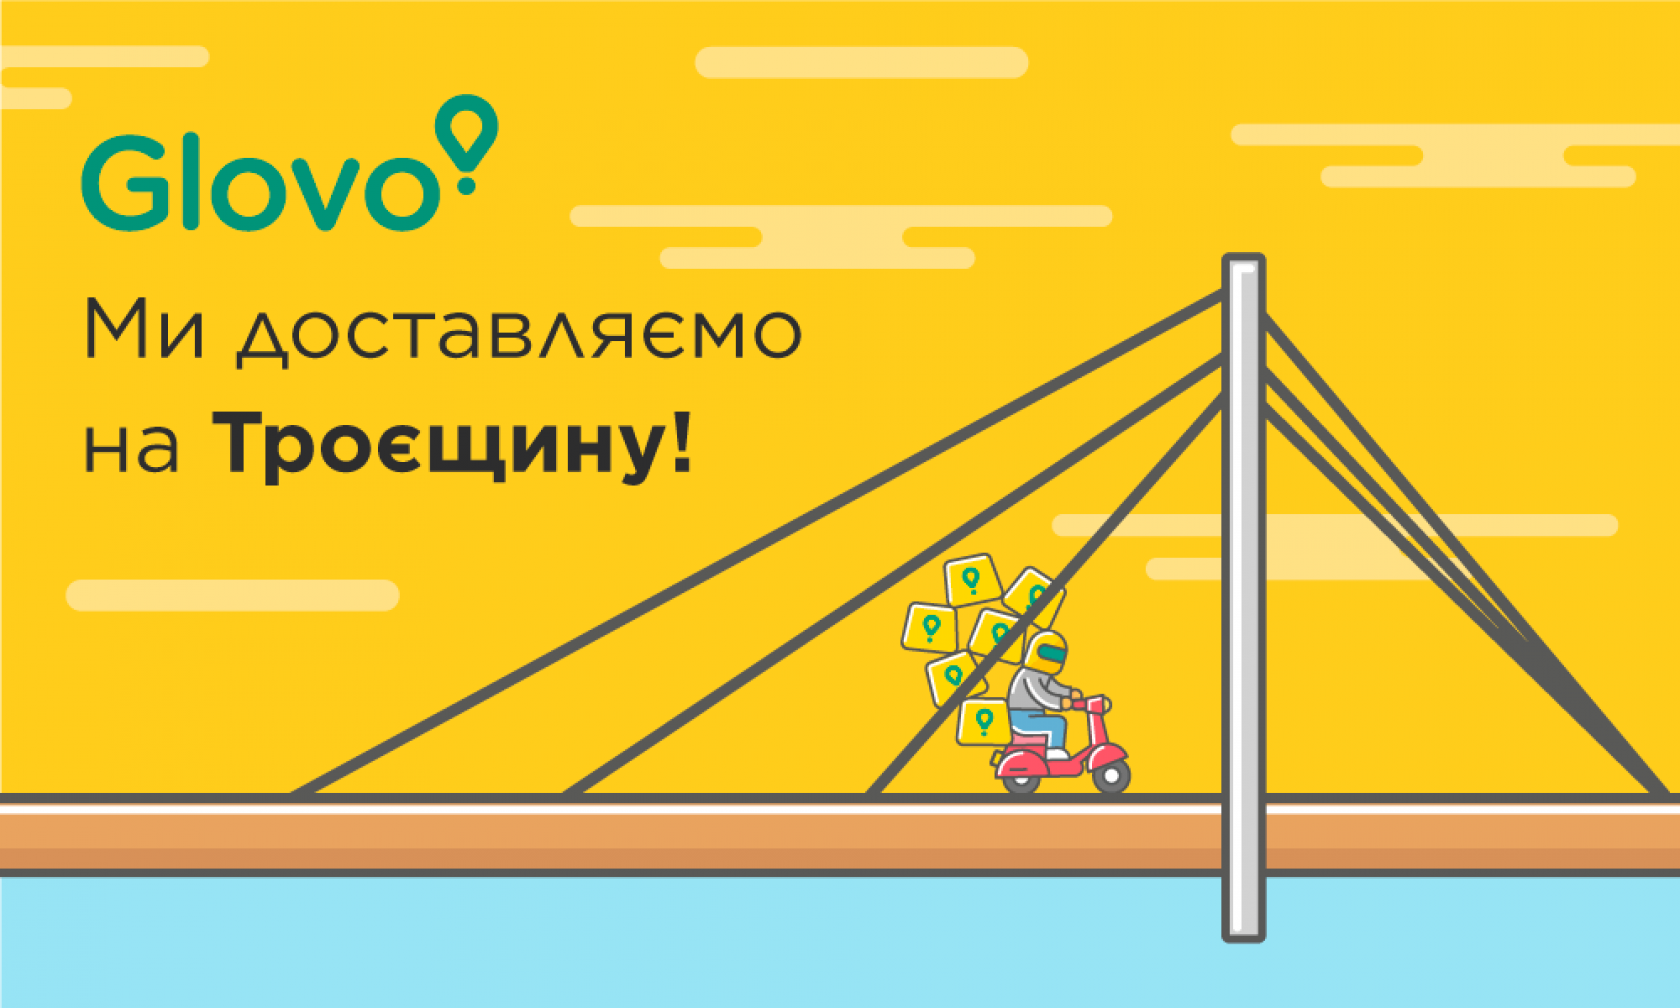 Glovo оповещает клиентов о старте работ в районе левобережного Киева